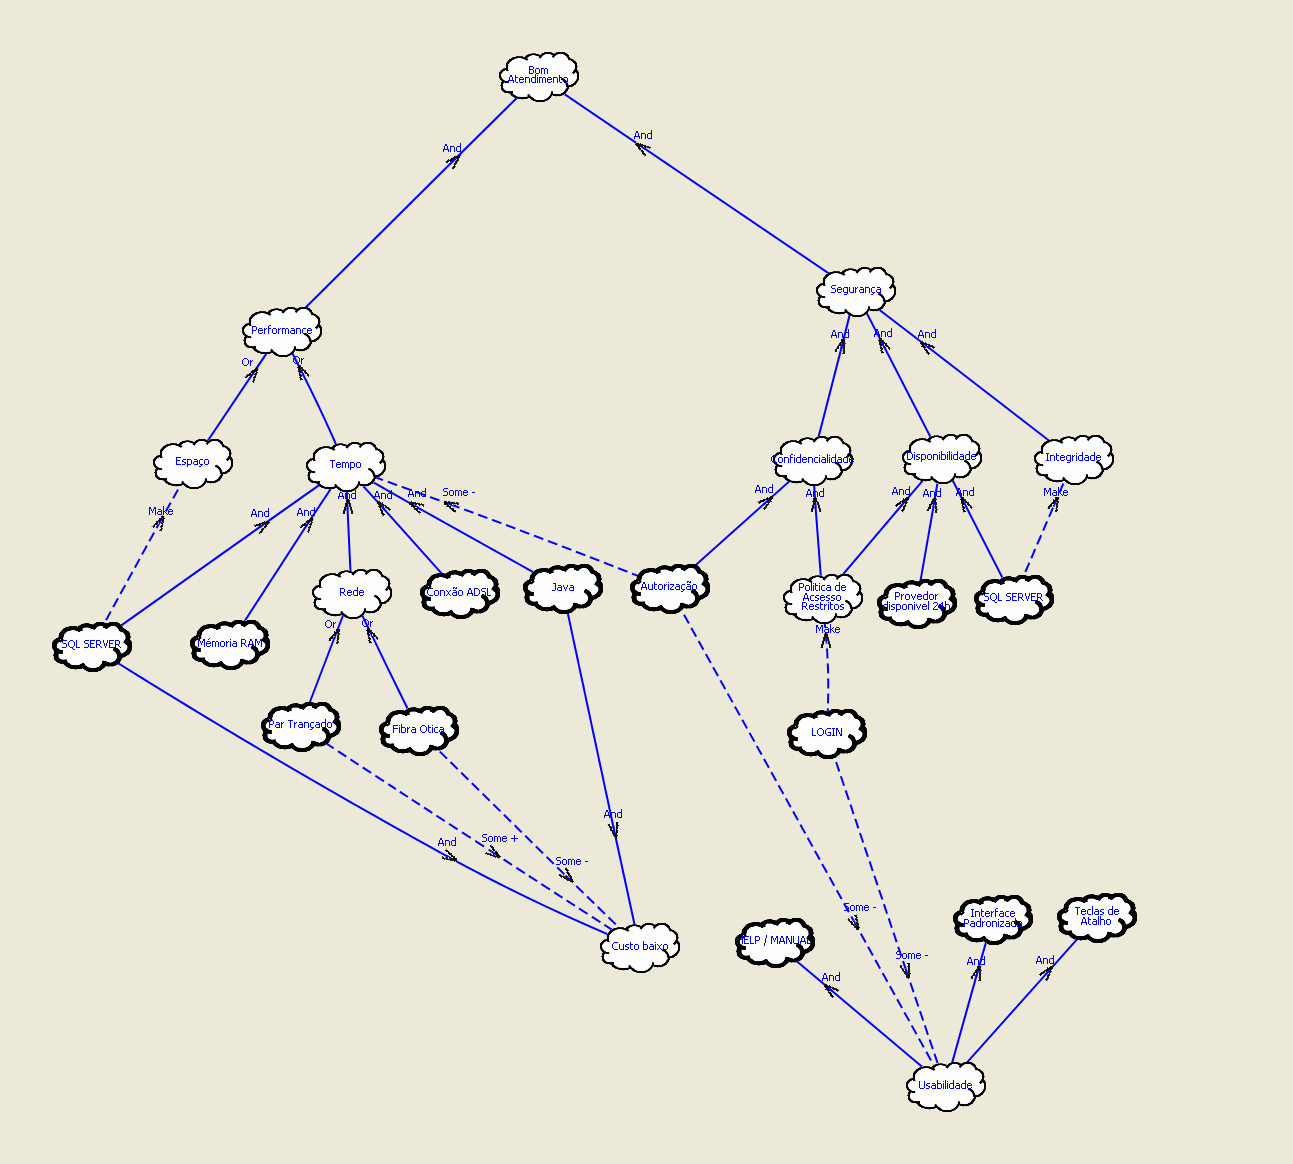 Grafo SIG O grafo SIG (Softgoal Interdependency Graph) abaixo fornece uma representação sistemática e global dos requisitos não funcionais, apresentando suas decomposições e